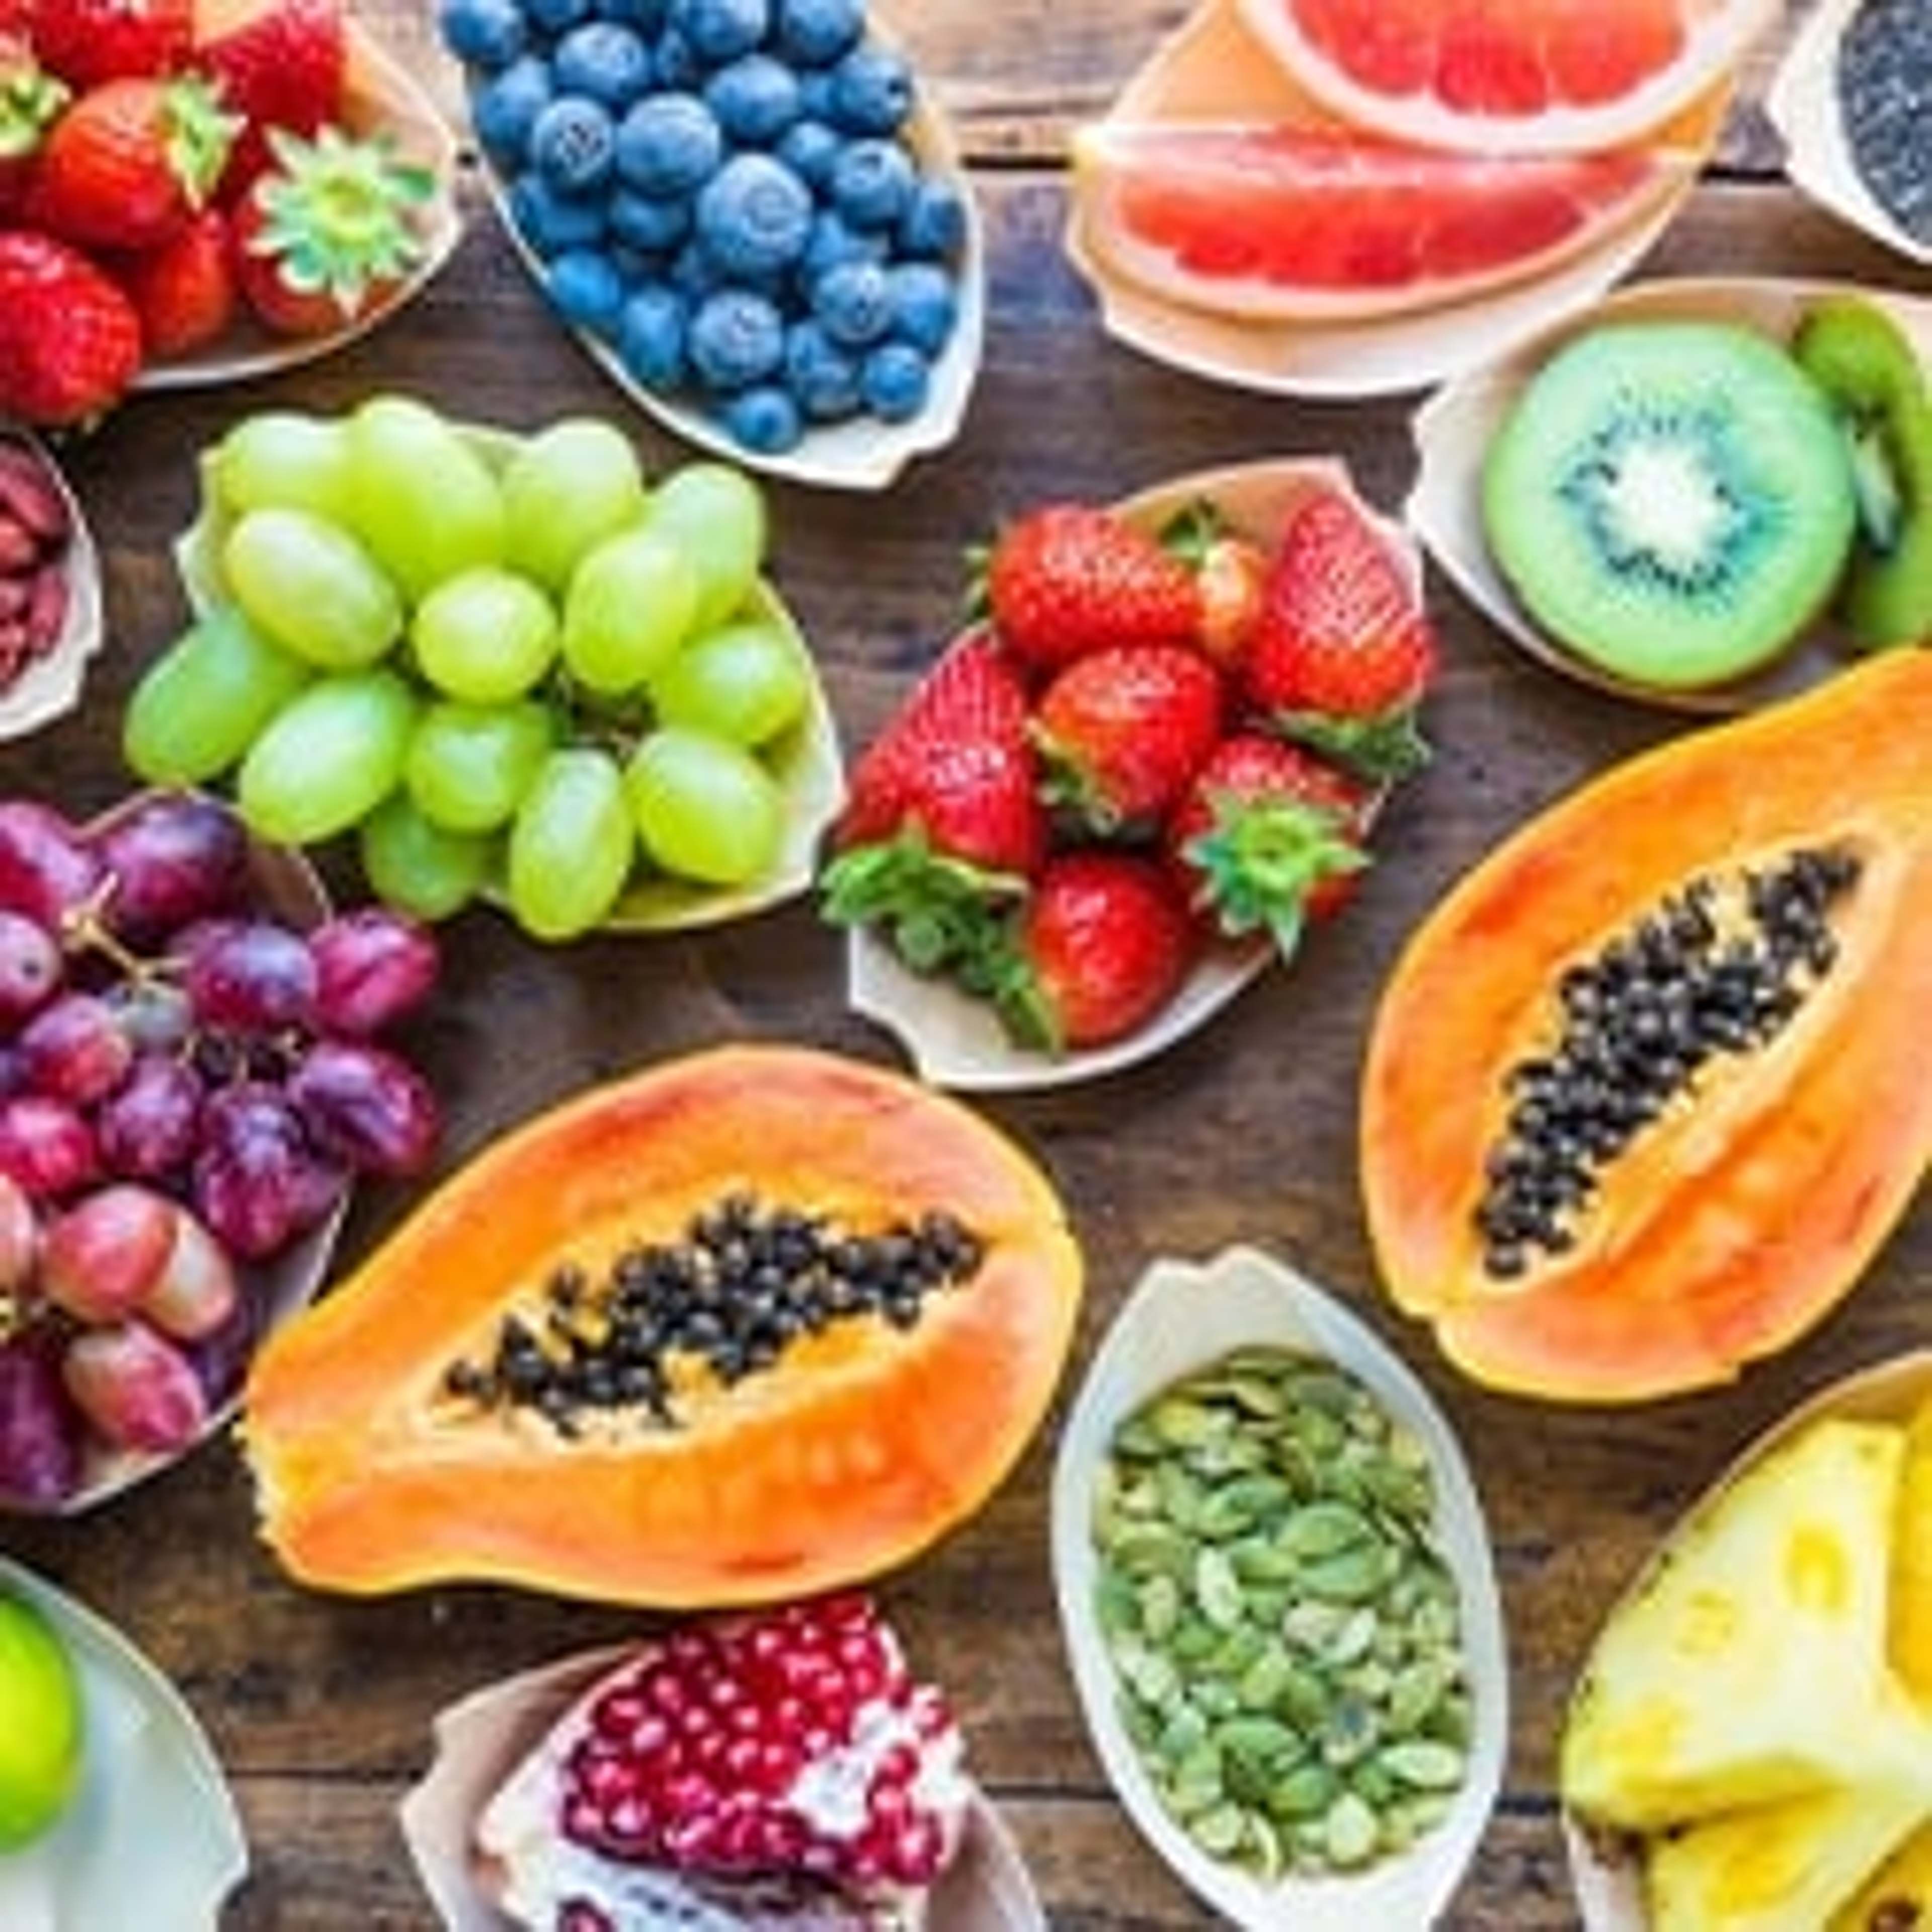 Superfrüchte enthalten überdurchschnittlich viele Vitalstoffe und sind kraftvolle Antioxidantien im Kampf gegen Freie Radikale.